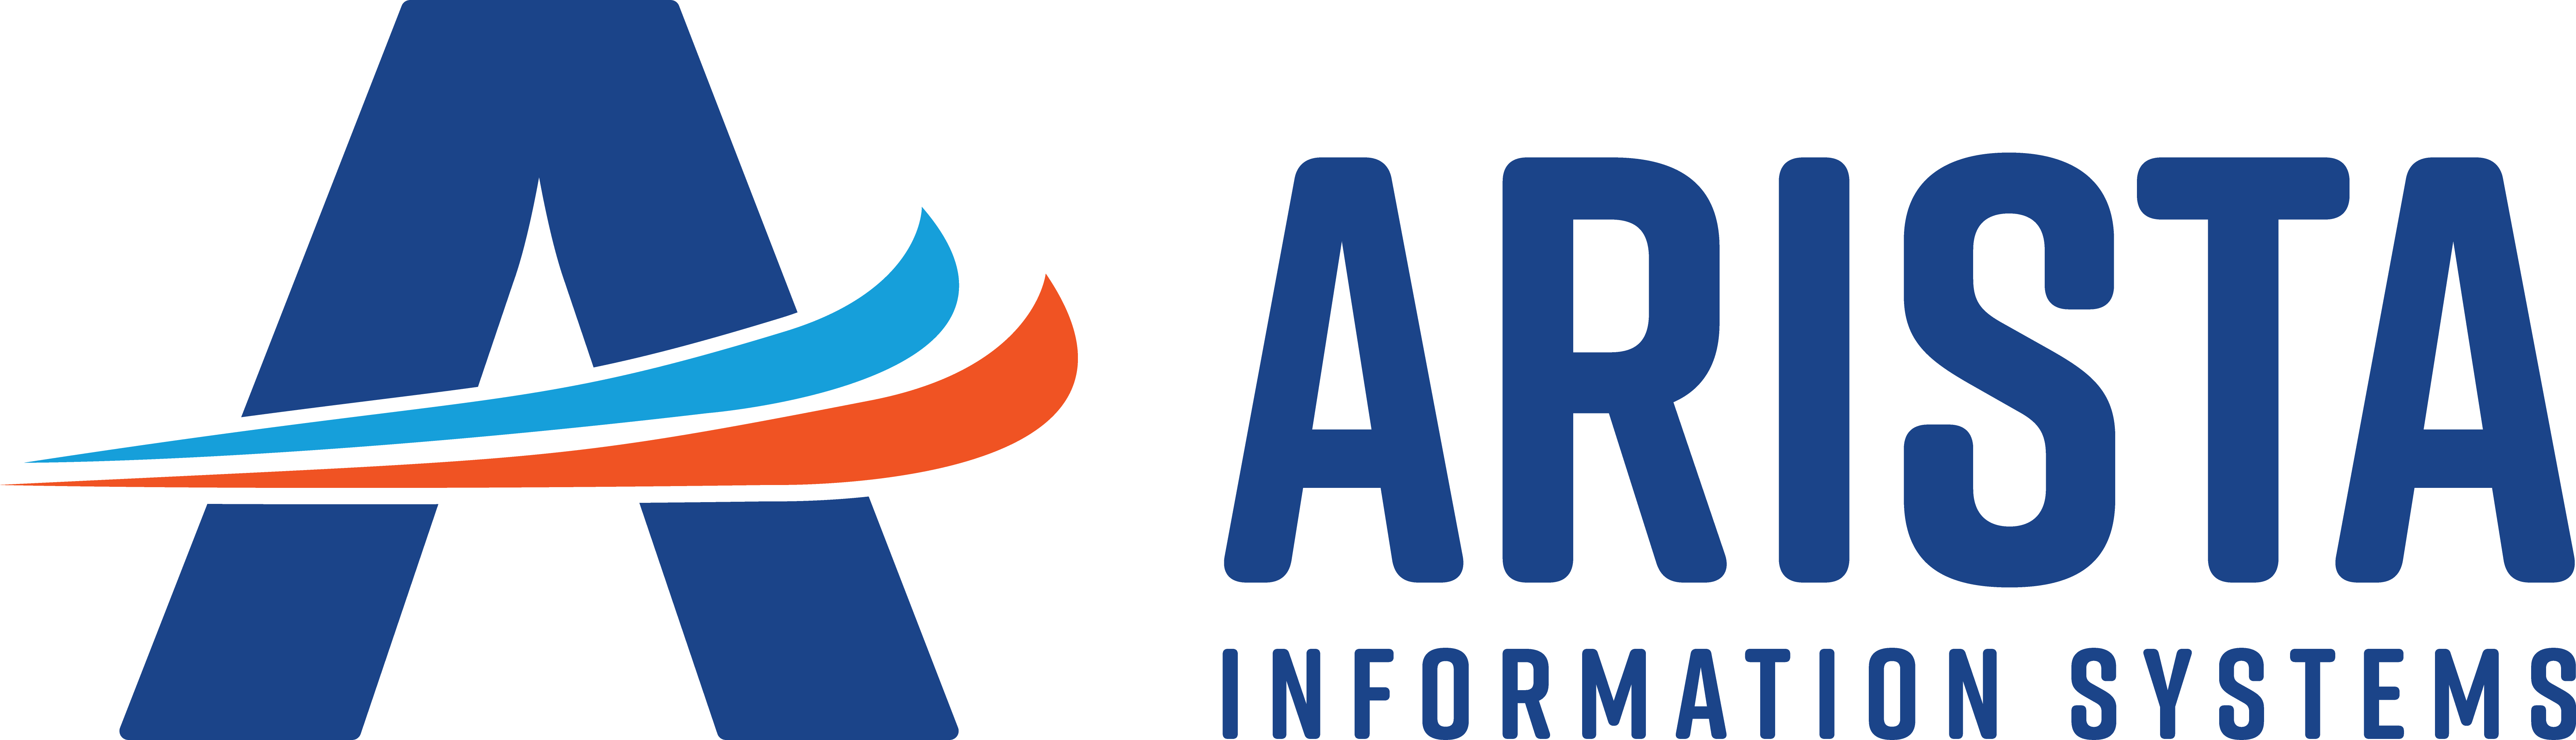 Arista Full Color Logo